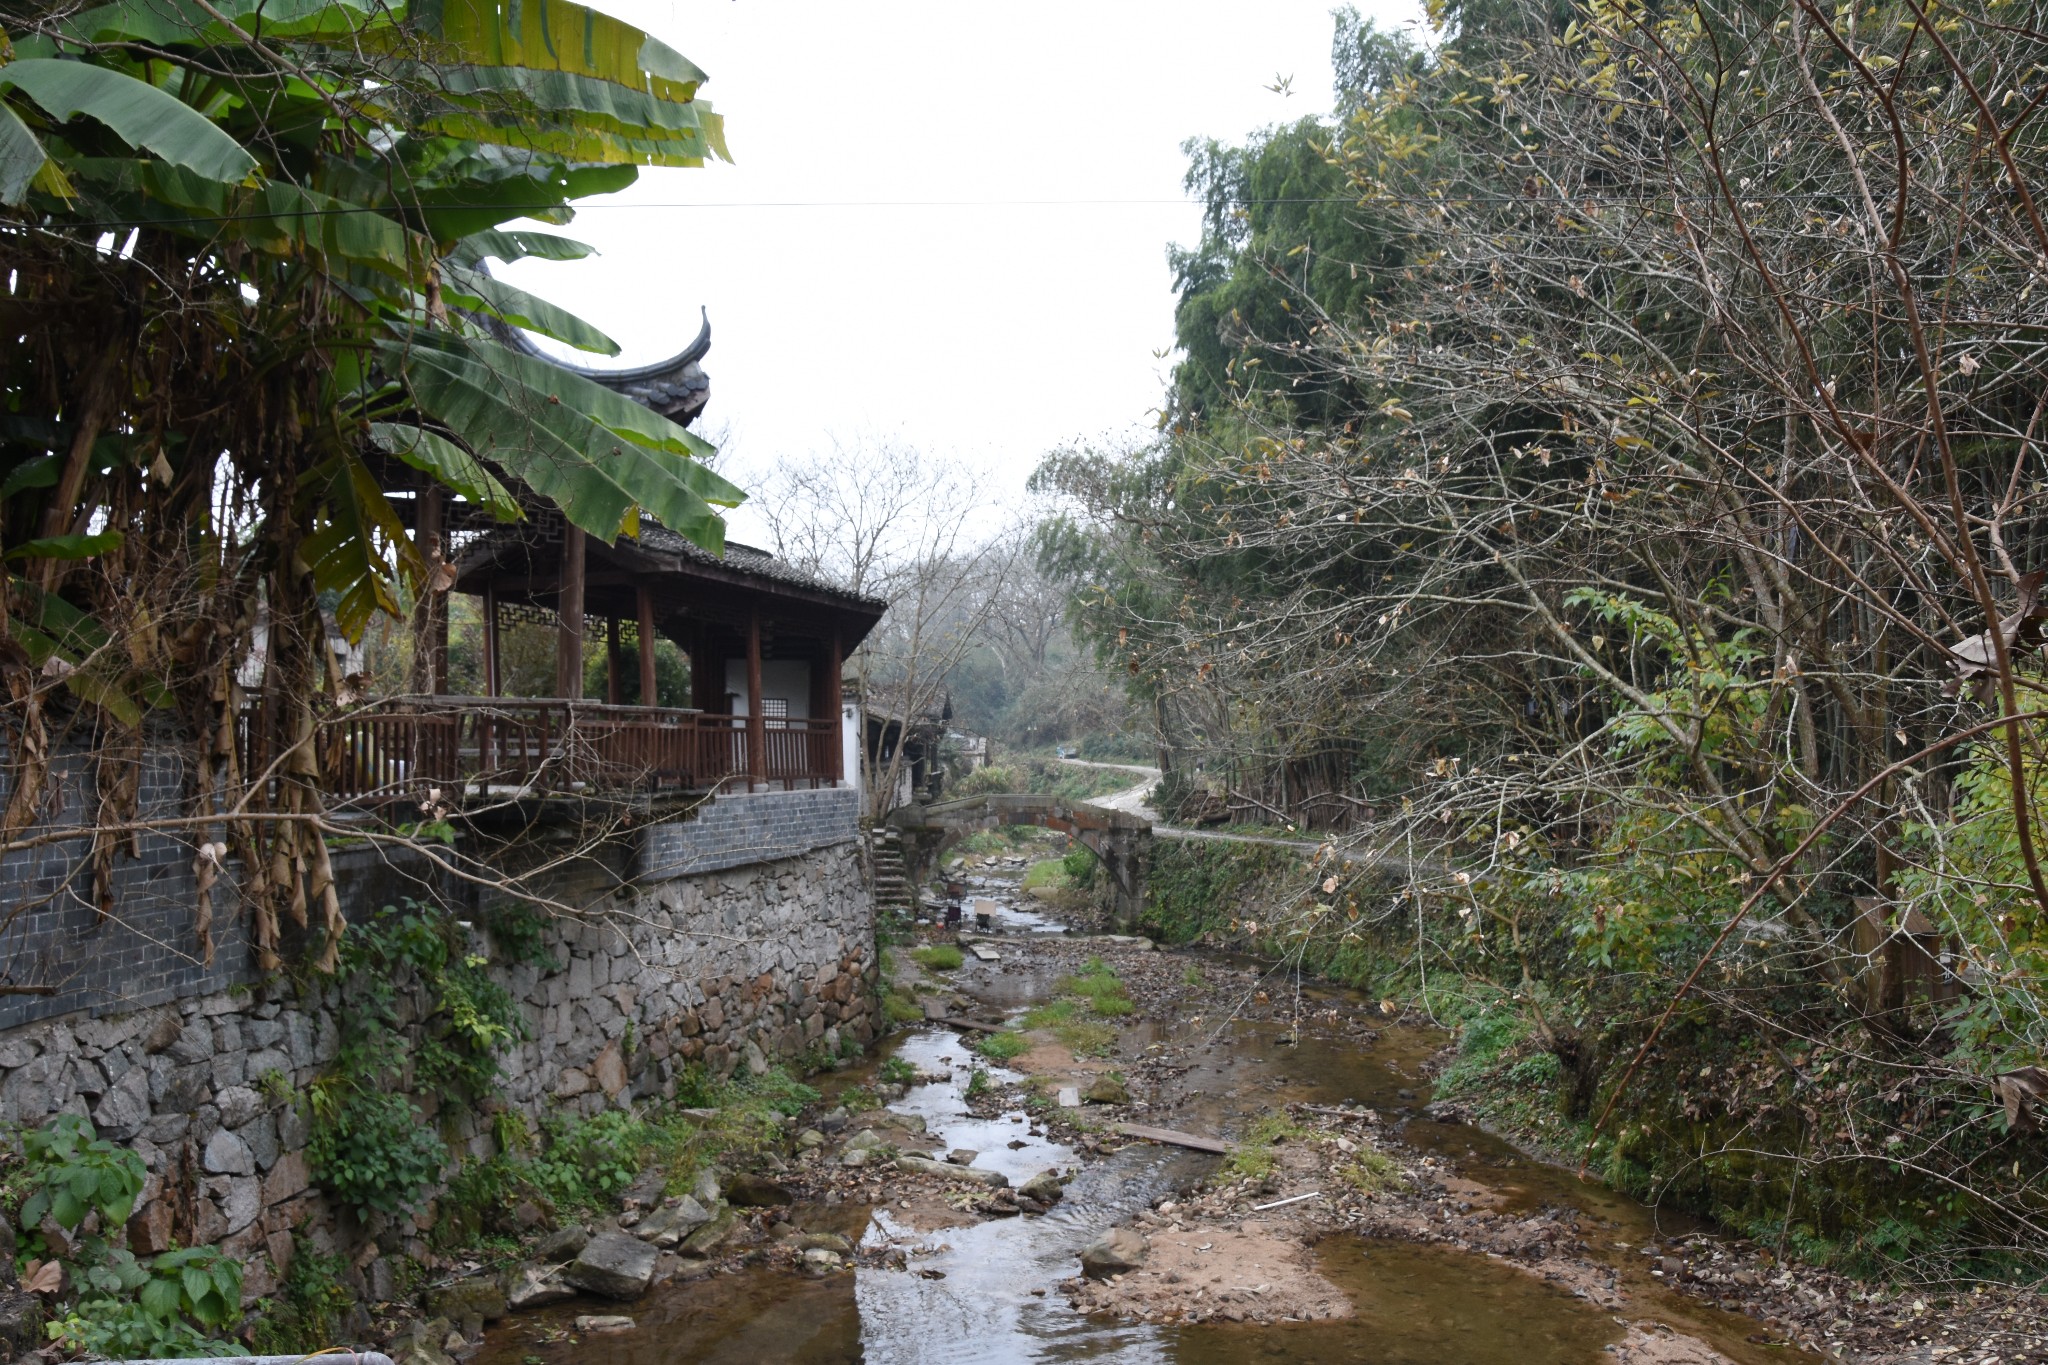 查济村,是一处保存较为完整的古建筑群,岑溪,许溪,石溪三溪在村中汇流